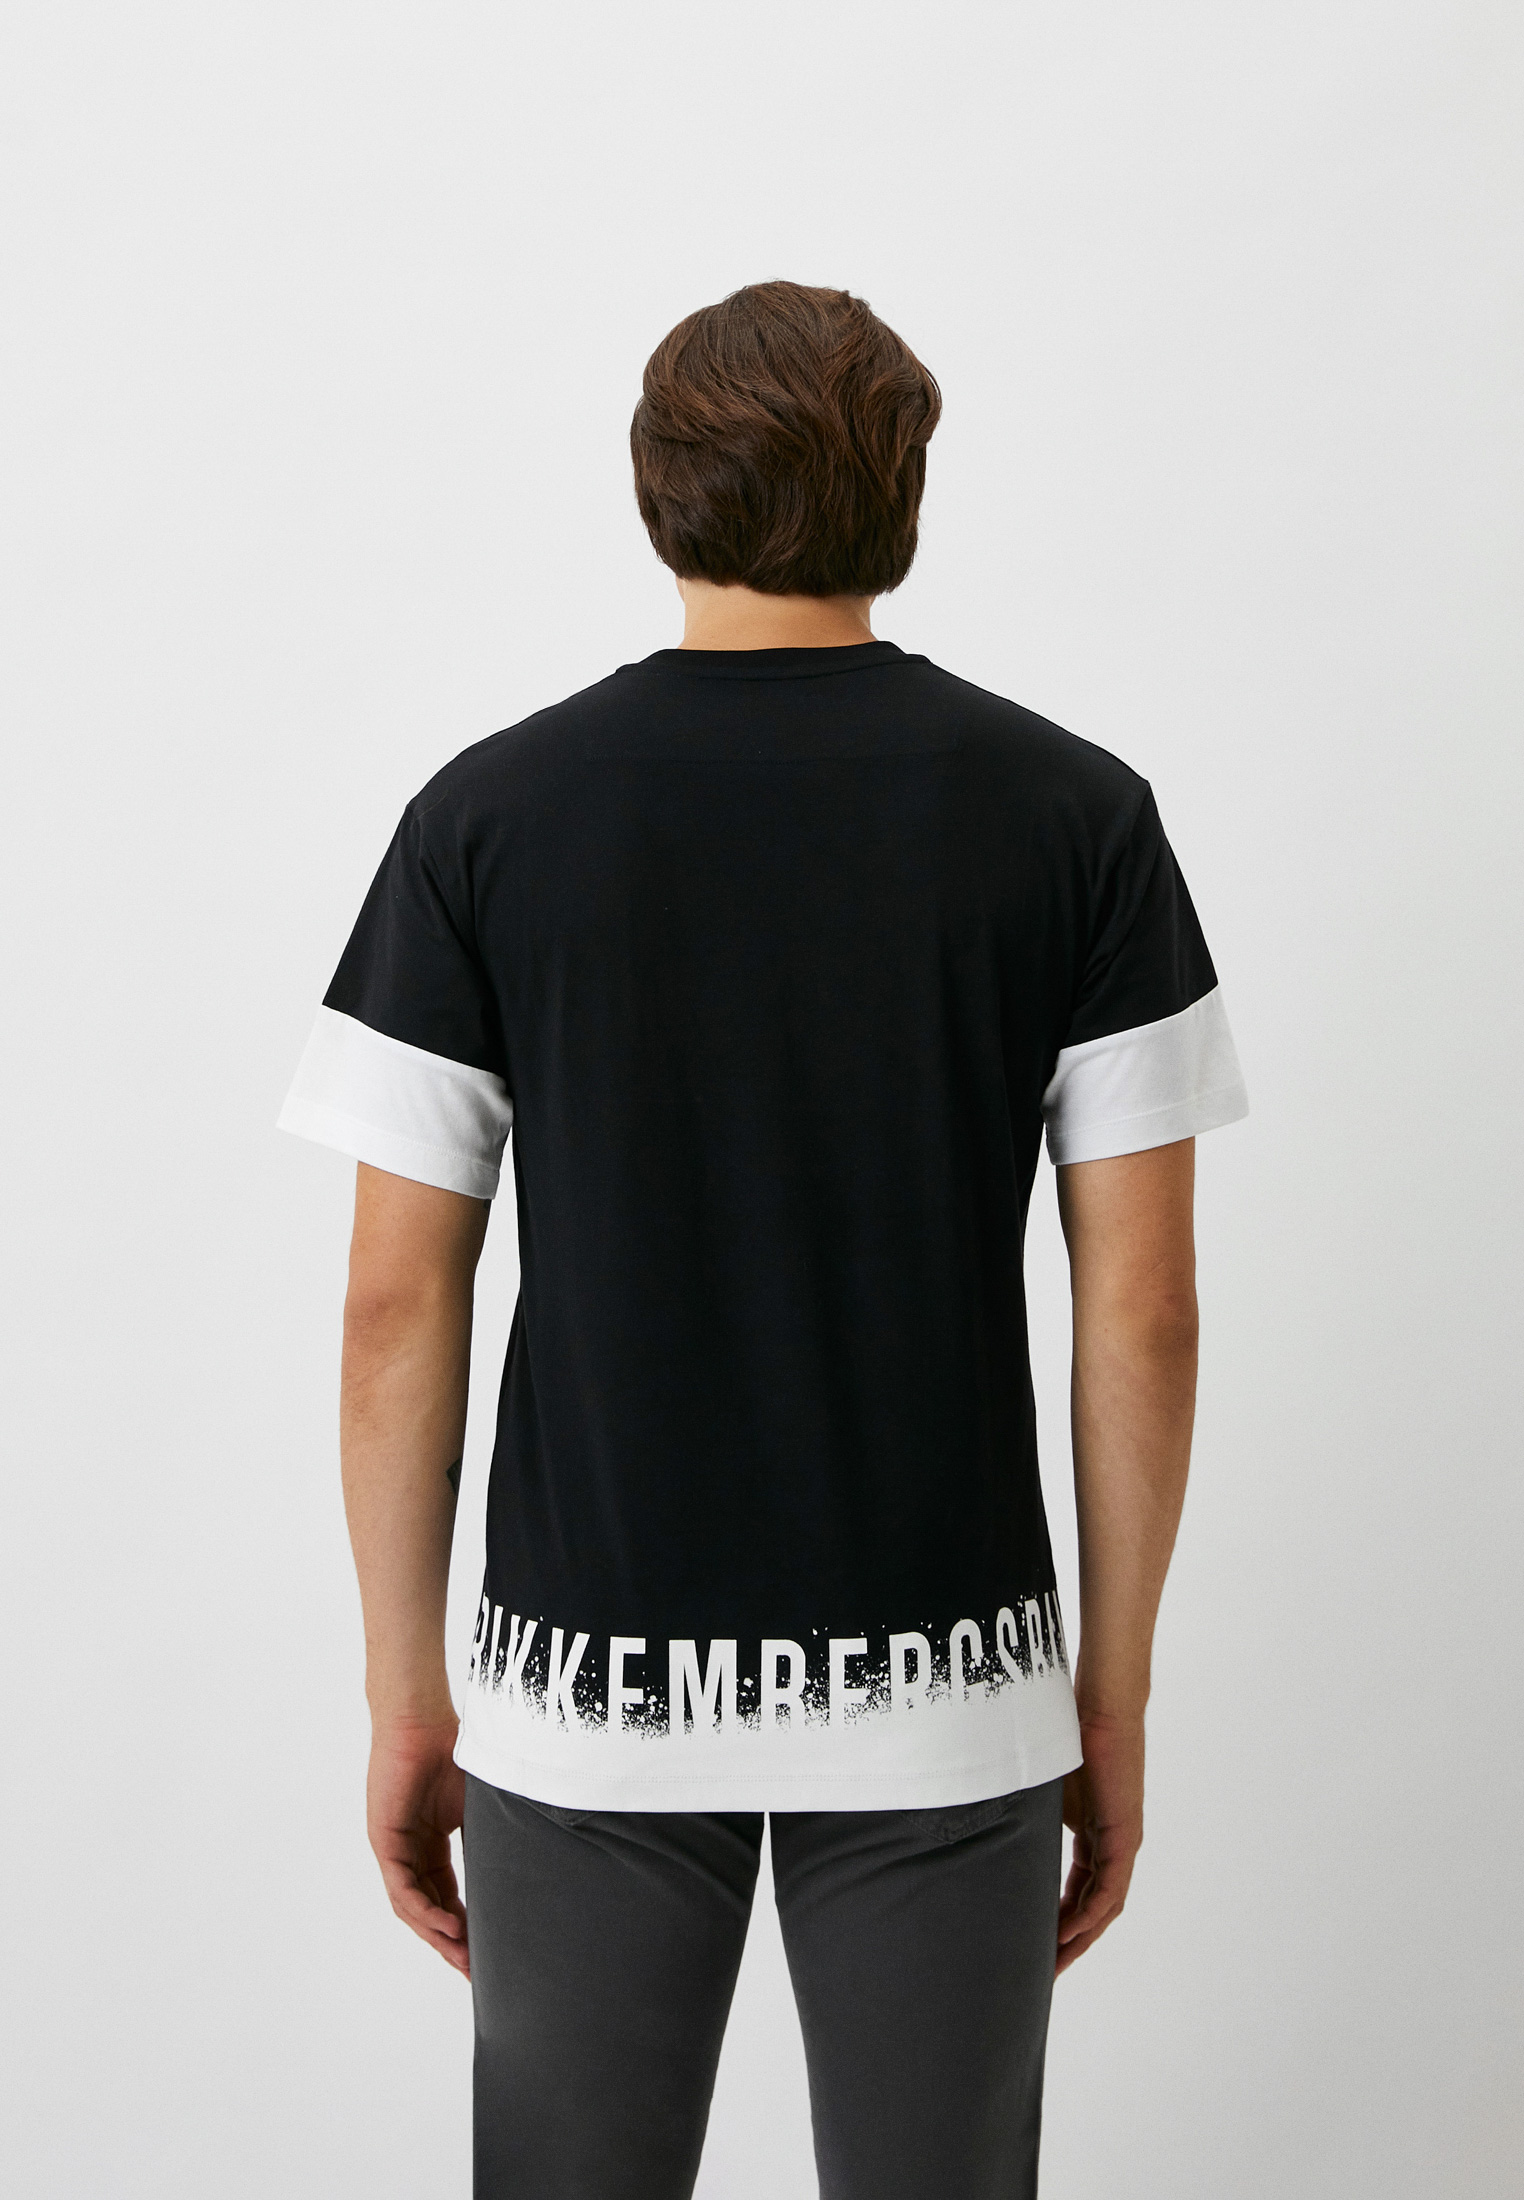 Мужская футболка Bikkembergs (Биккембергс) C 4 141 01 M 4445: изображение 3